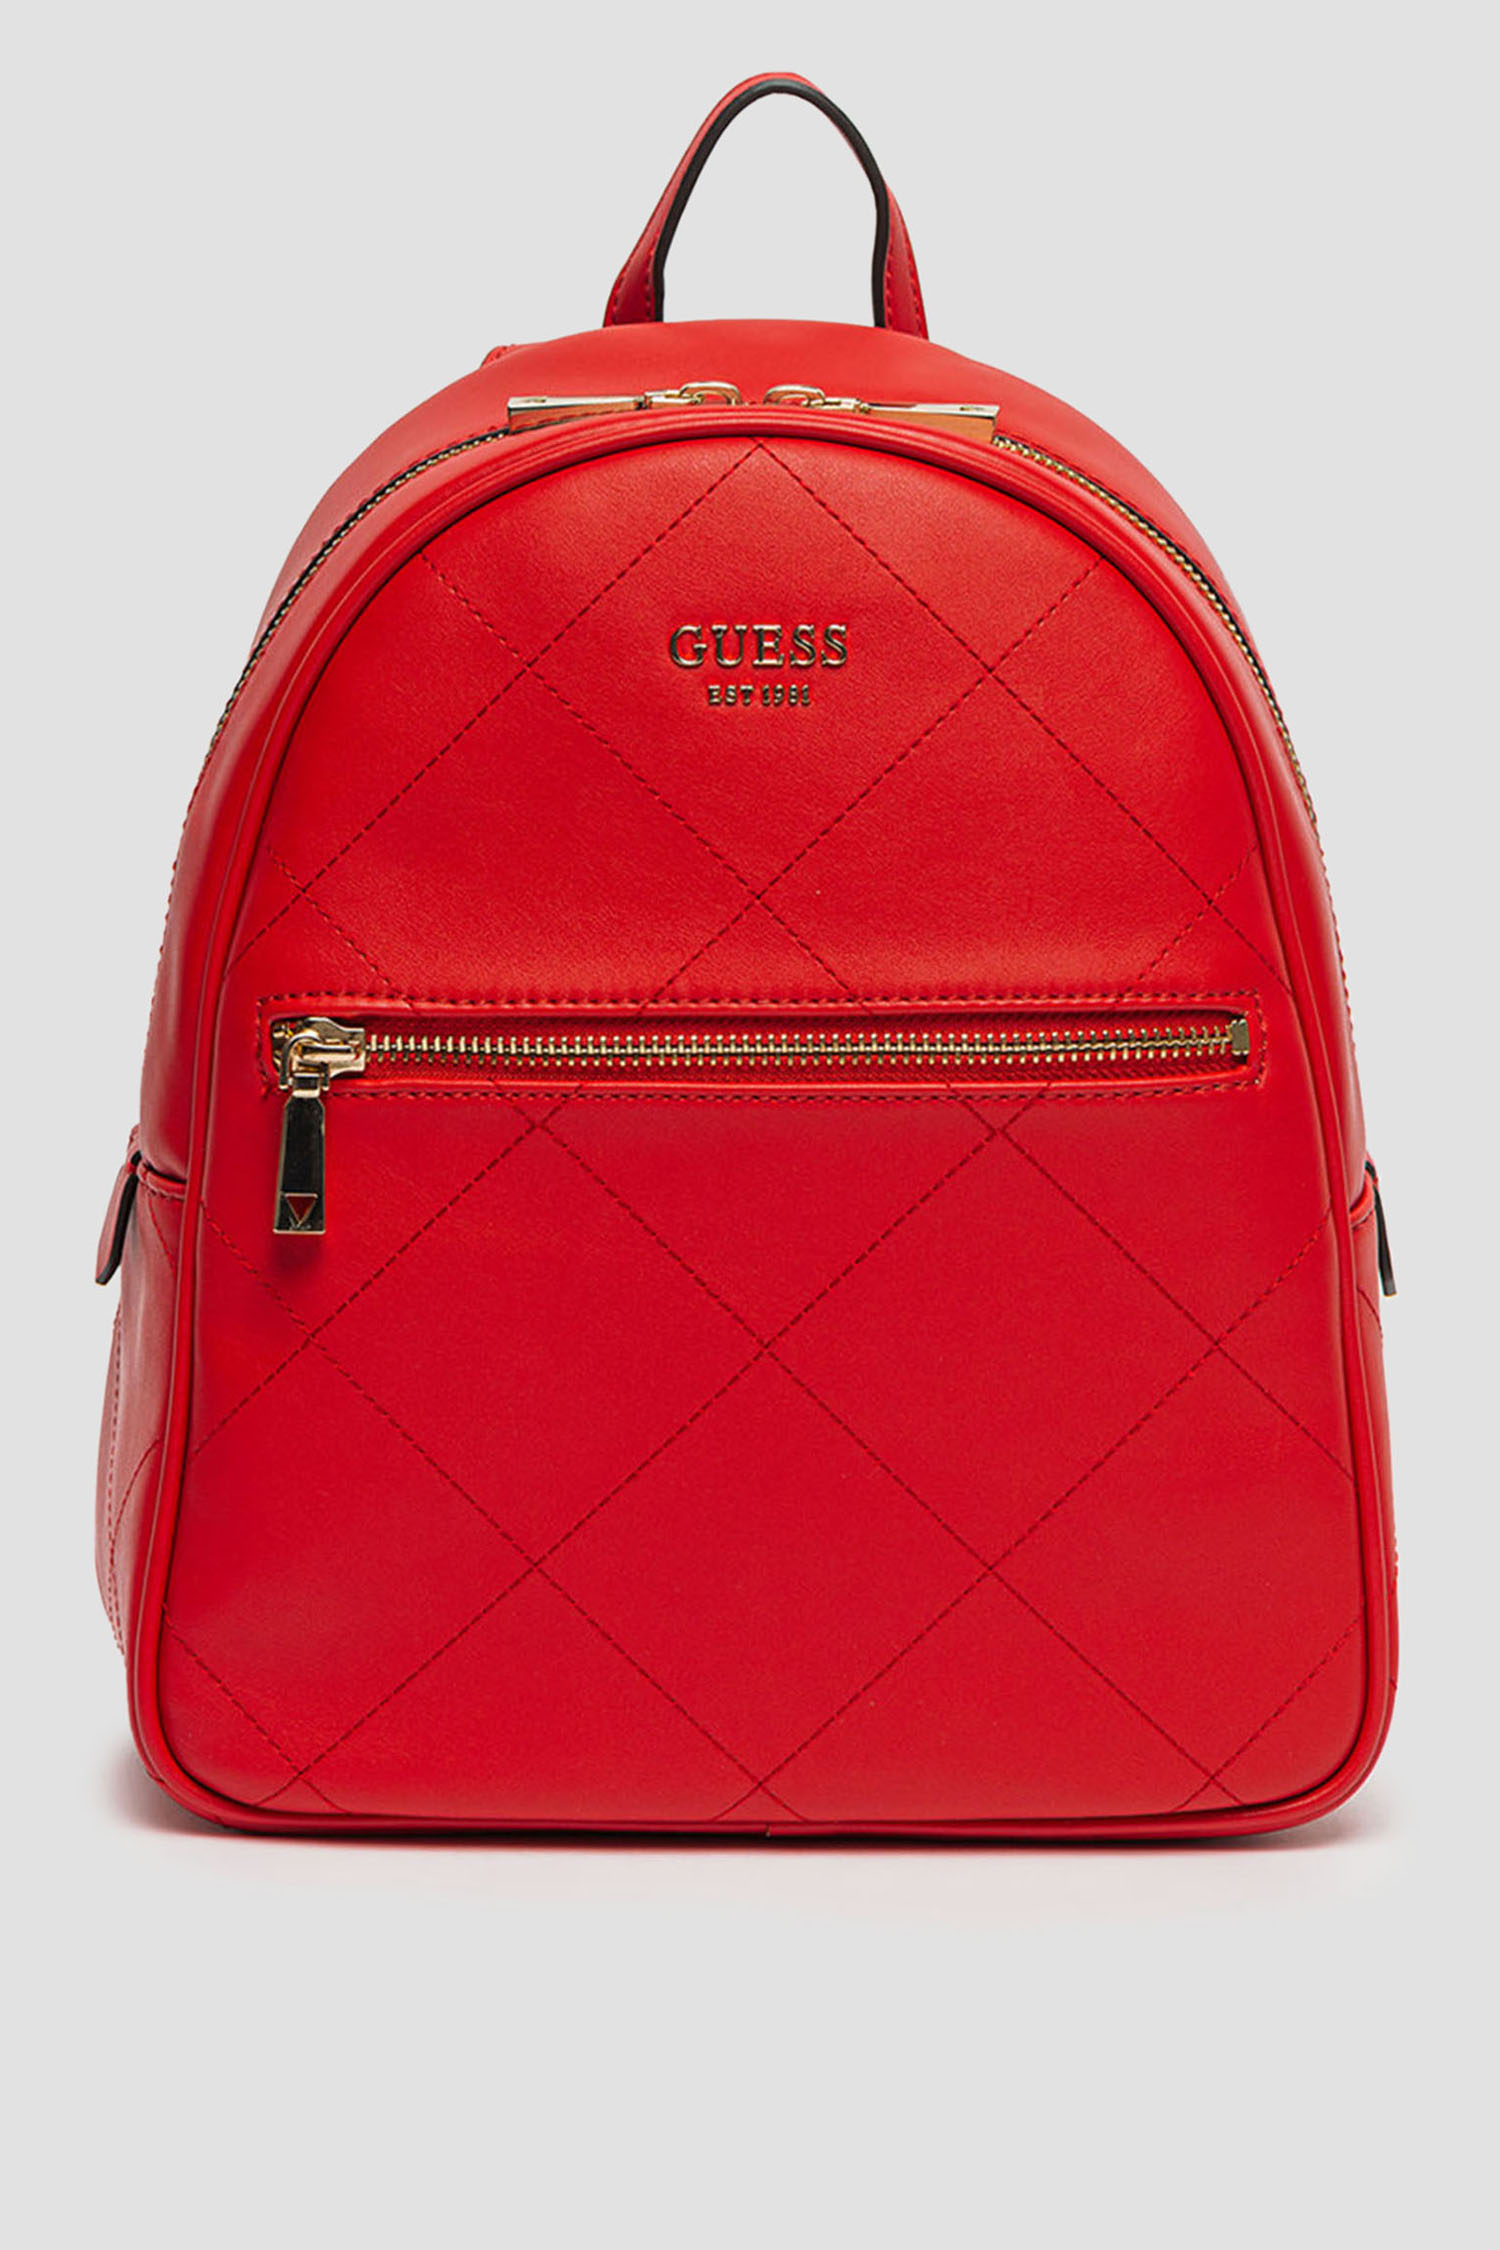 Жіночий червоний рюкзак Guess HWQO69.95320;RMR